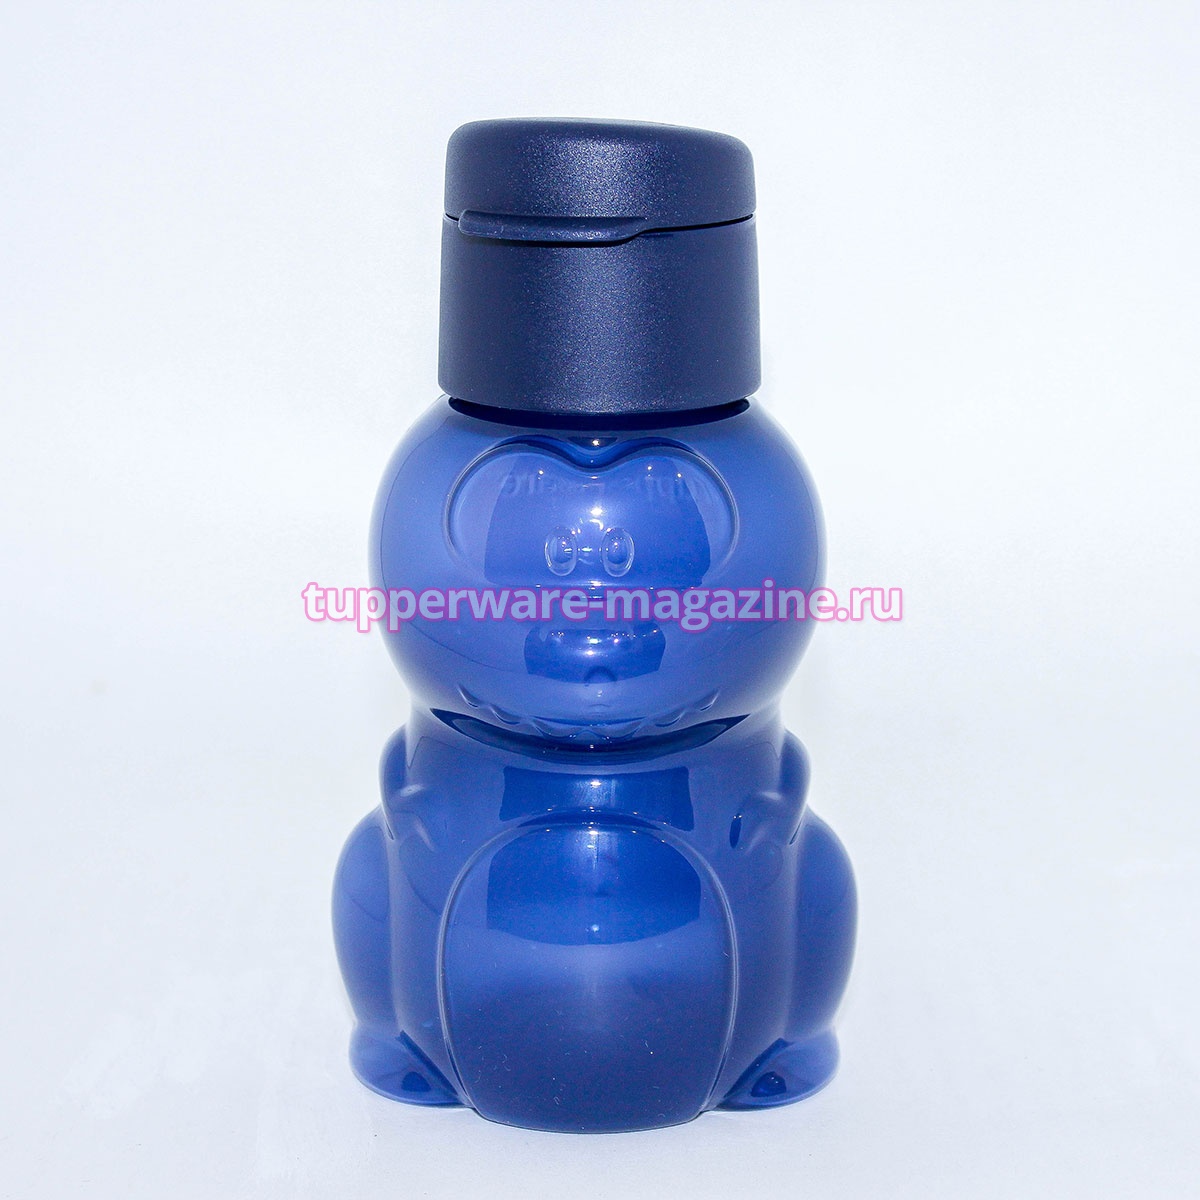 Эко-бутылка "Динозаврик" в синем цвете